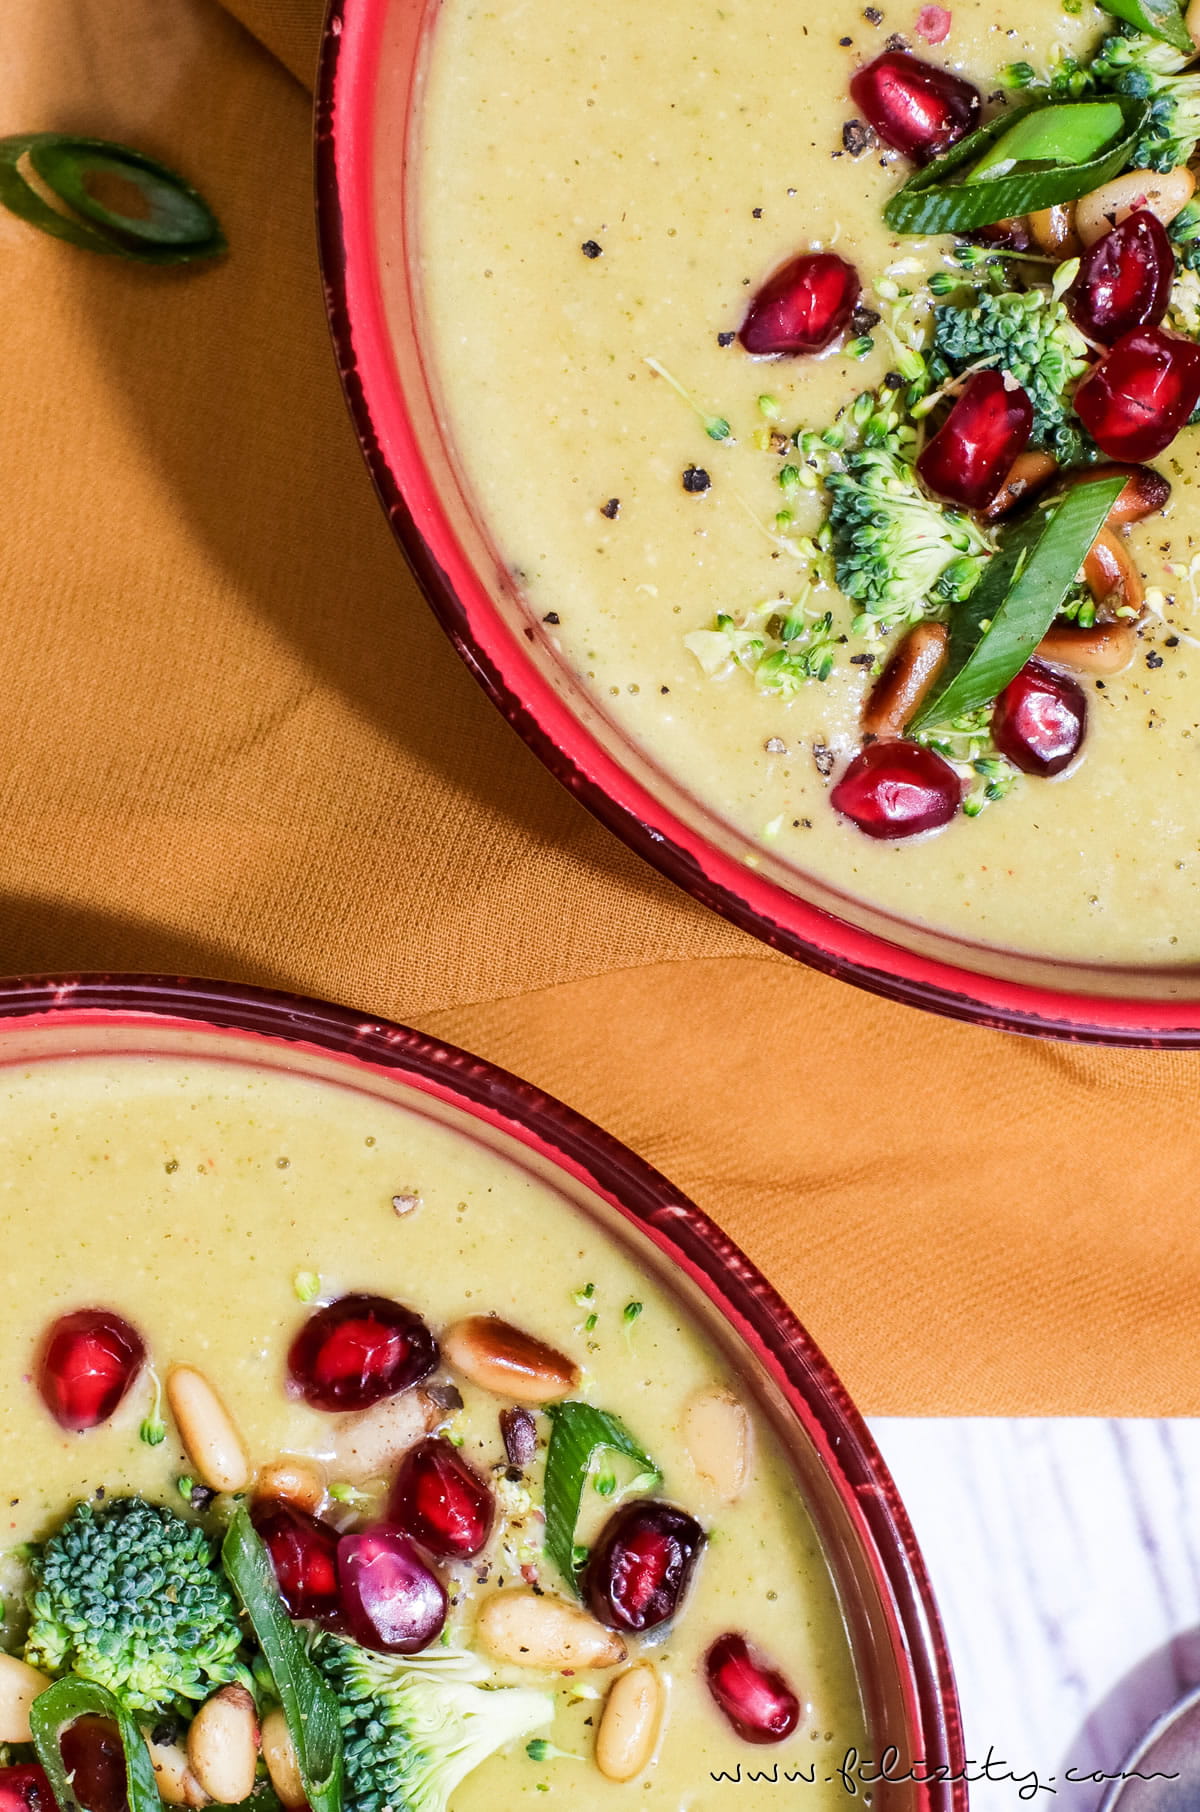 Orientalische Brokkoli-Suppe mit Ingwer, Kokos und Granatapfel | Veganes Rezept für Vorspeise oder Hauptgericht | Filizity.com | Food-Blog aus dem Rheinland #vegan #gesund #soulfood